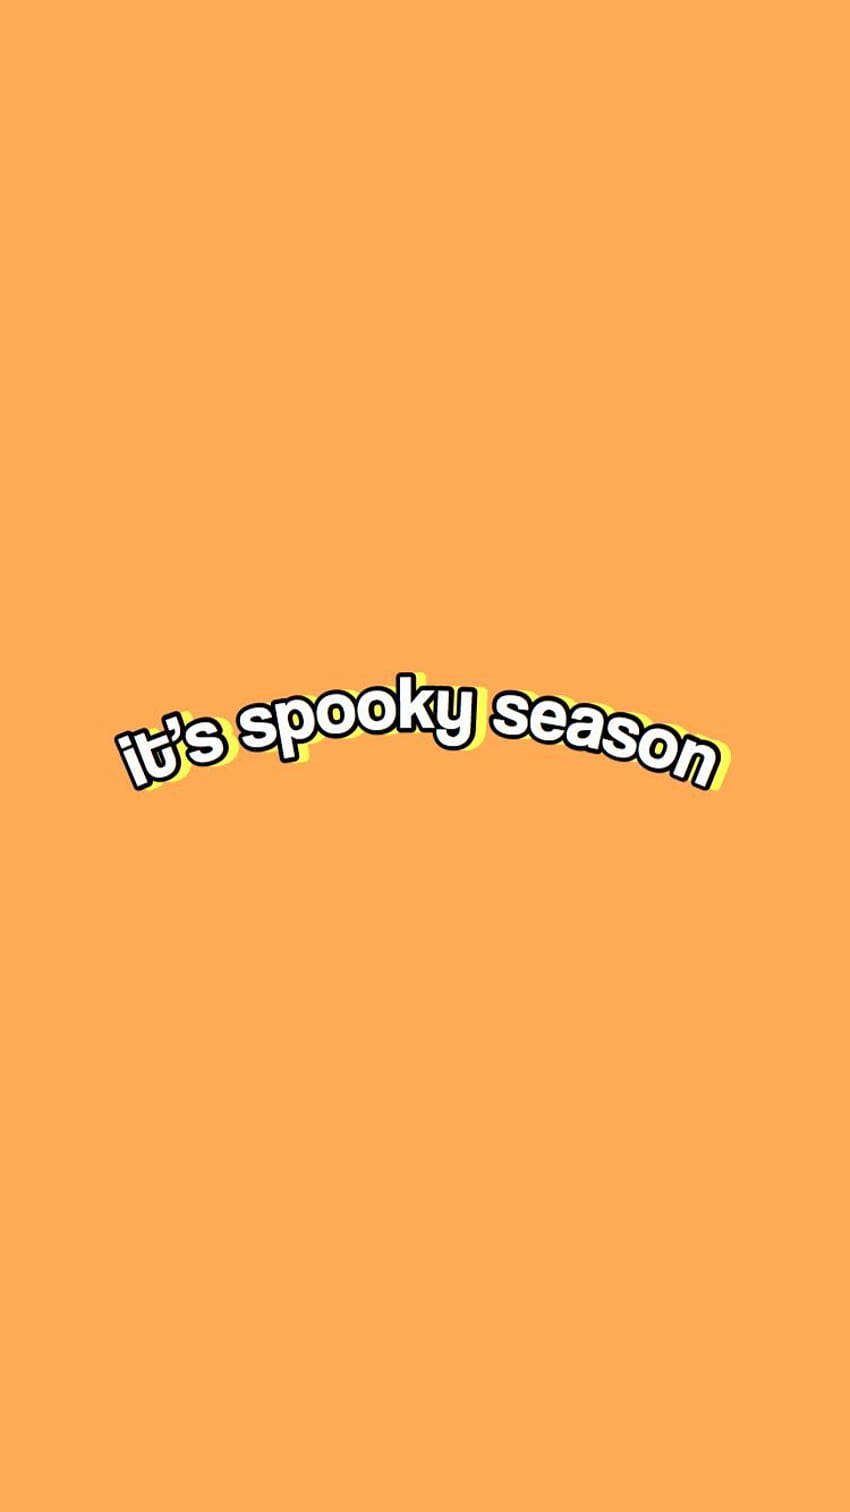 Its spooky season hd wallpaper - Cute Halloween